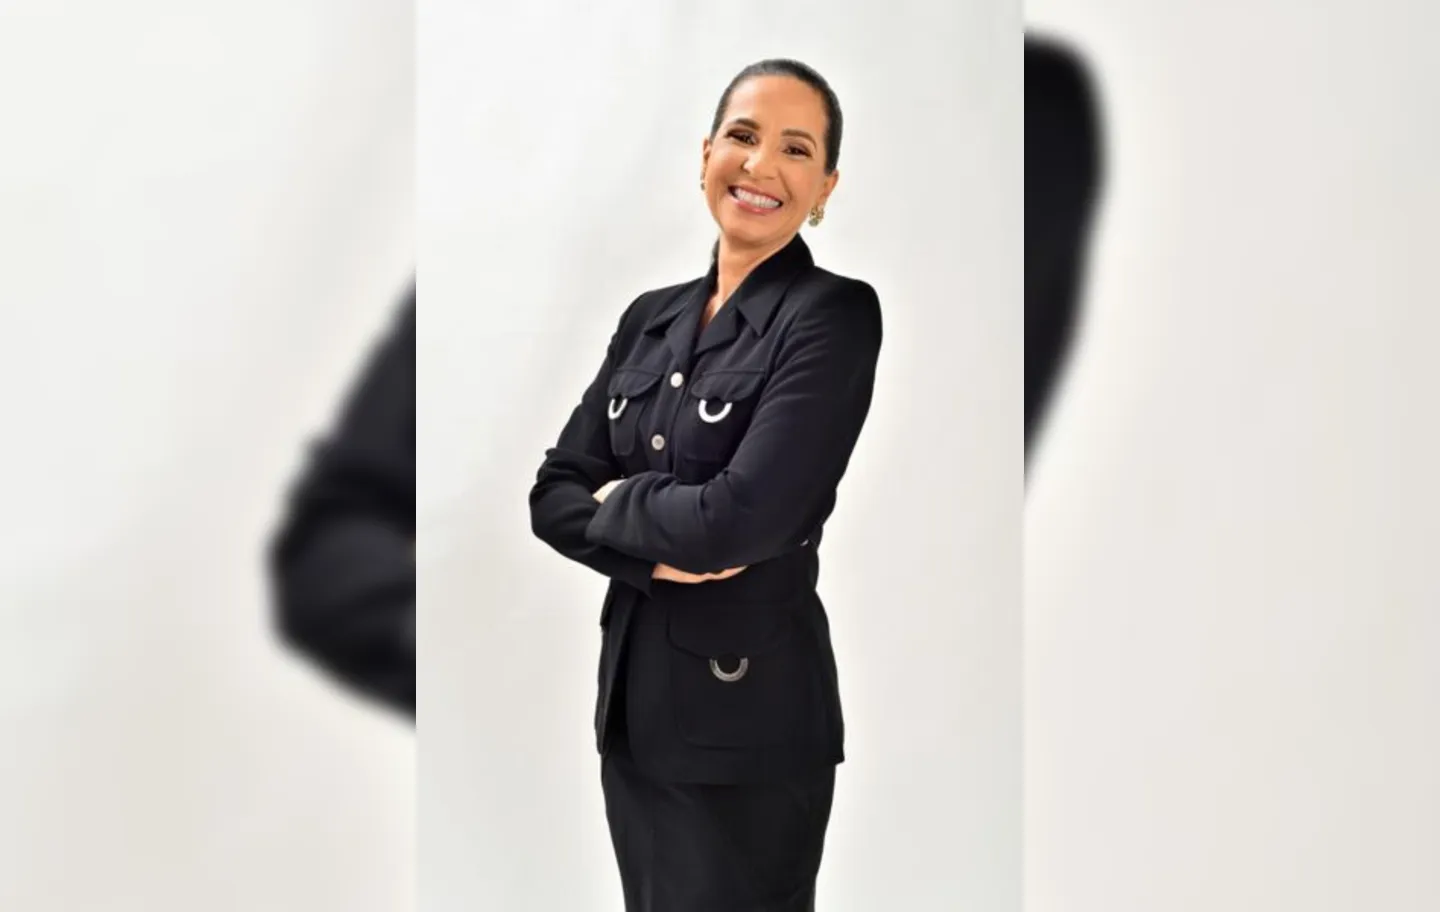 "Sinto-me representando todas as empreendedoras”, diz Rosemma Maluf